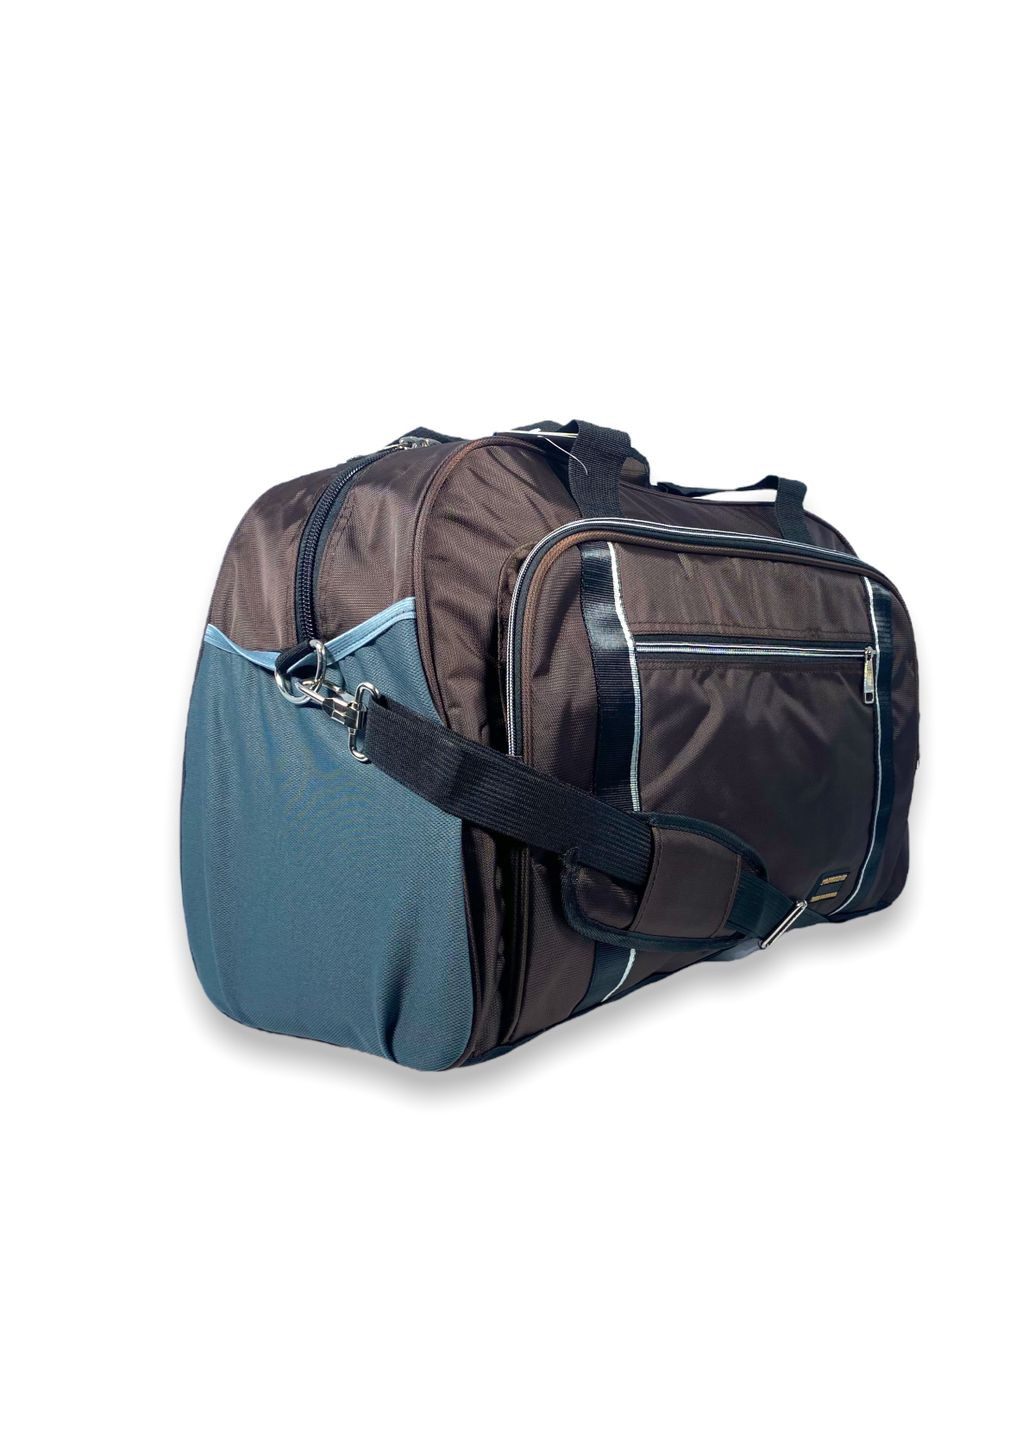 Дорожная сумка 60 л одно отделение внутренний карман два фронтальных кармана размер: 60*40*25 см коричневый Tongsheng (285815014)